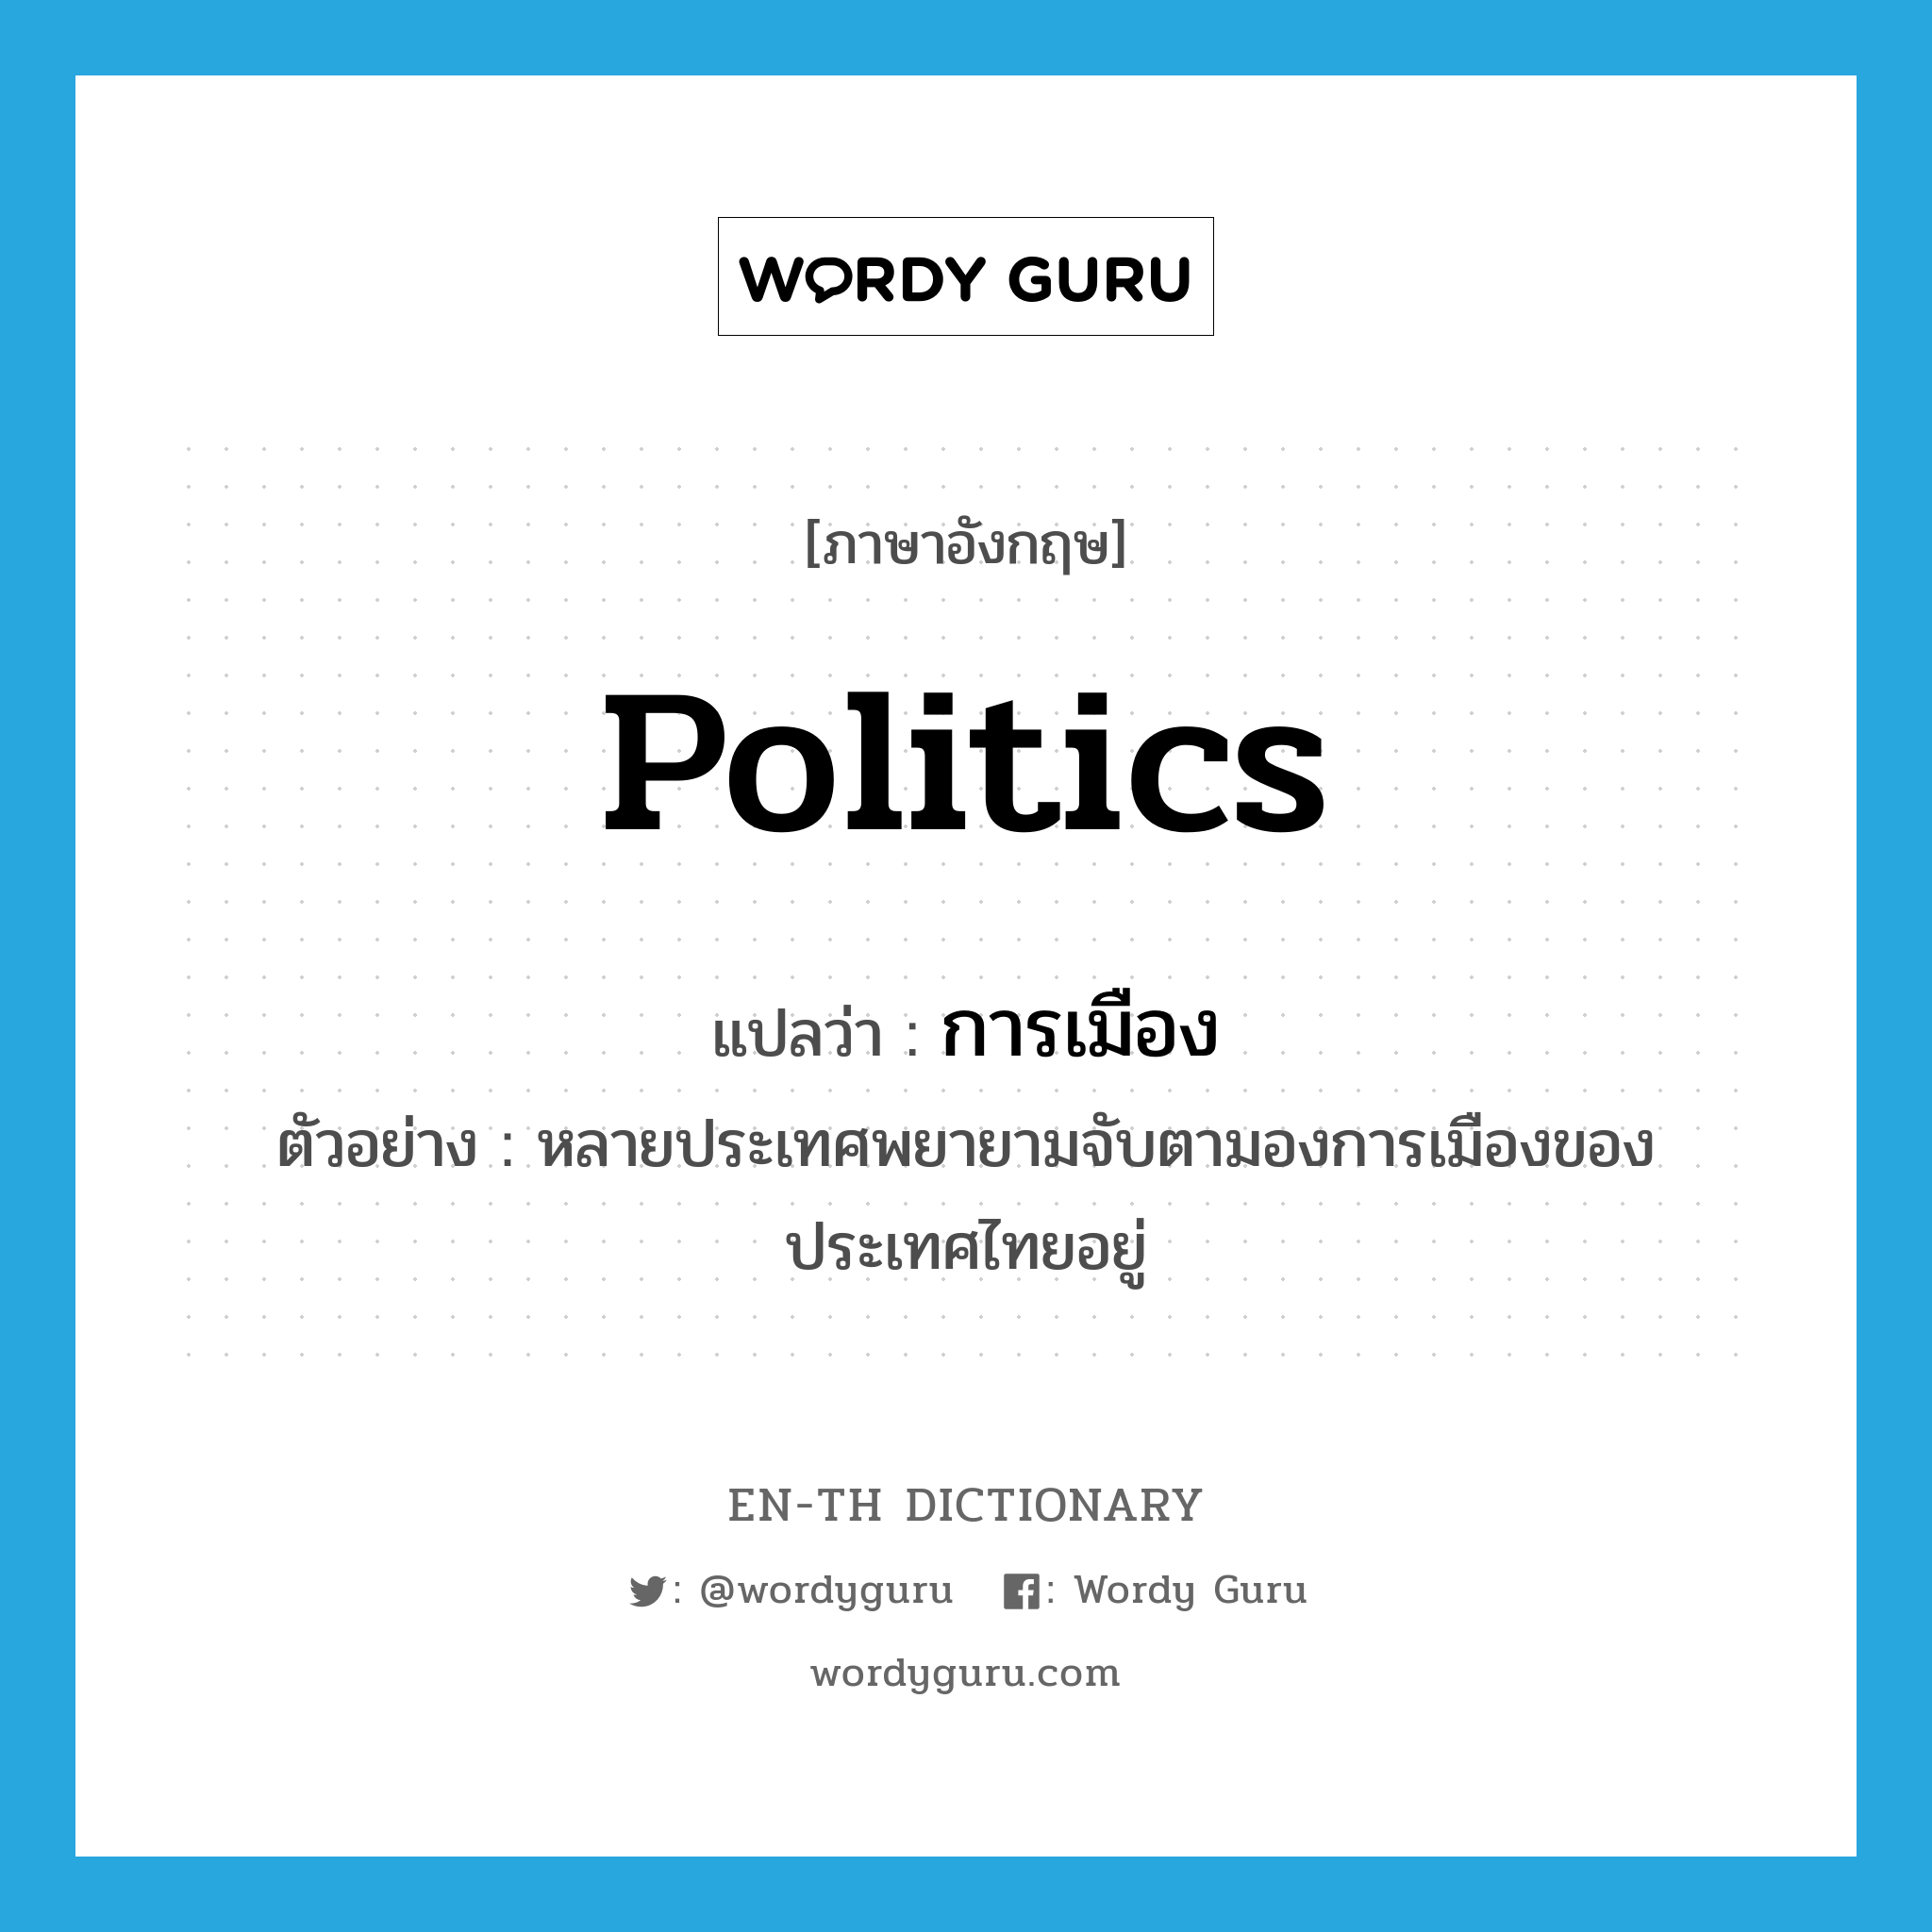 politics แปลว่า?, คำศัพท์ภาษาอังกฤษ politics แปลว่า การเมือง ประเภท N ตัวอย่าง หลายประเทศพยายามจับตามองการเมืองของประเทศไทยอยู่ หมวด N